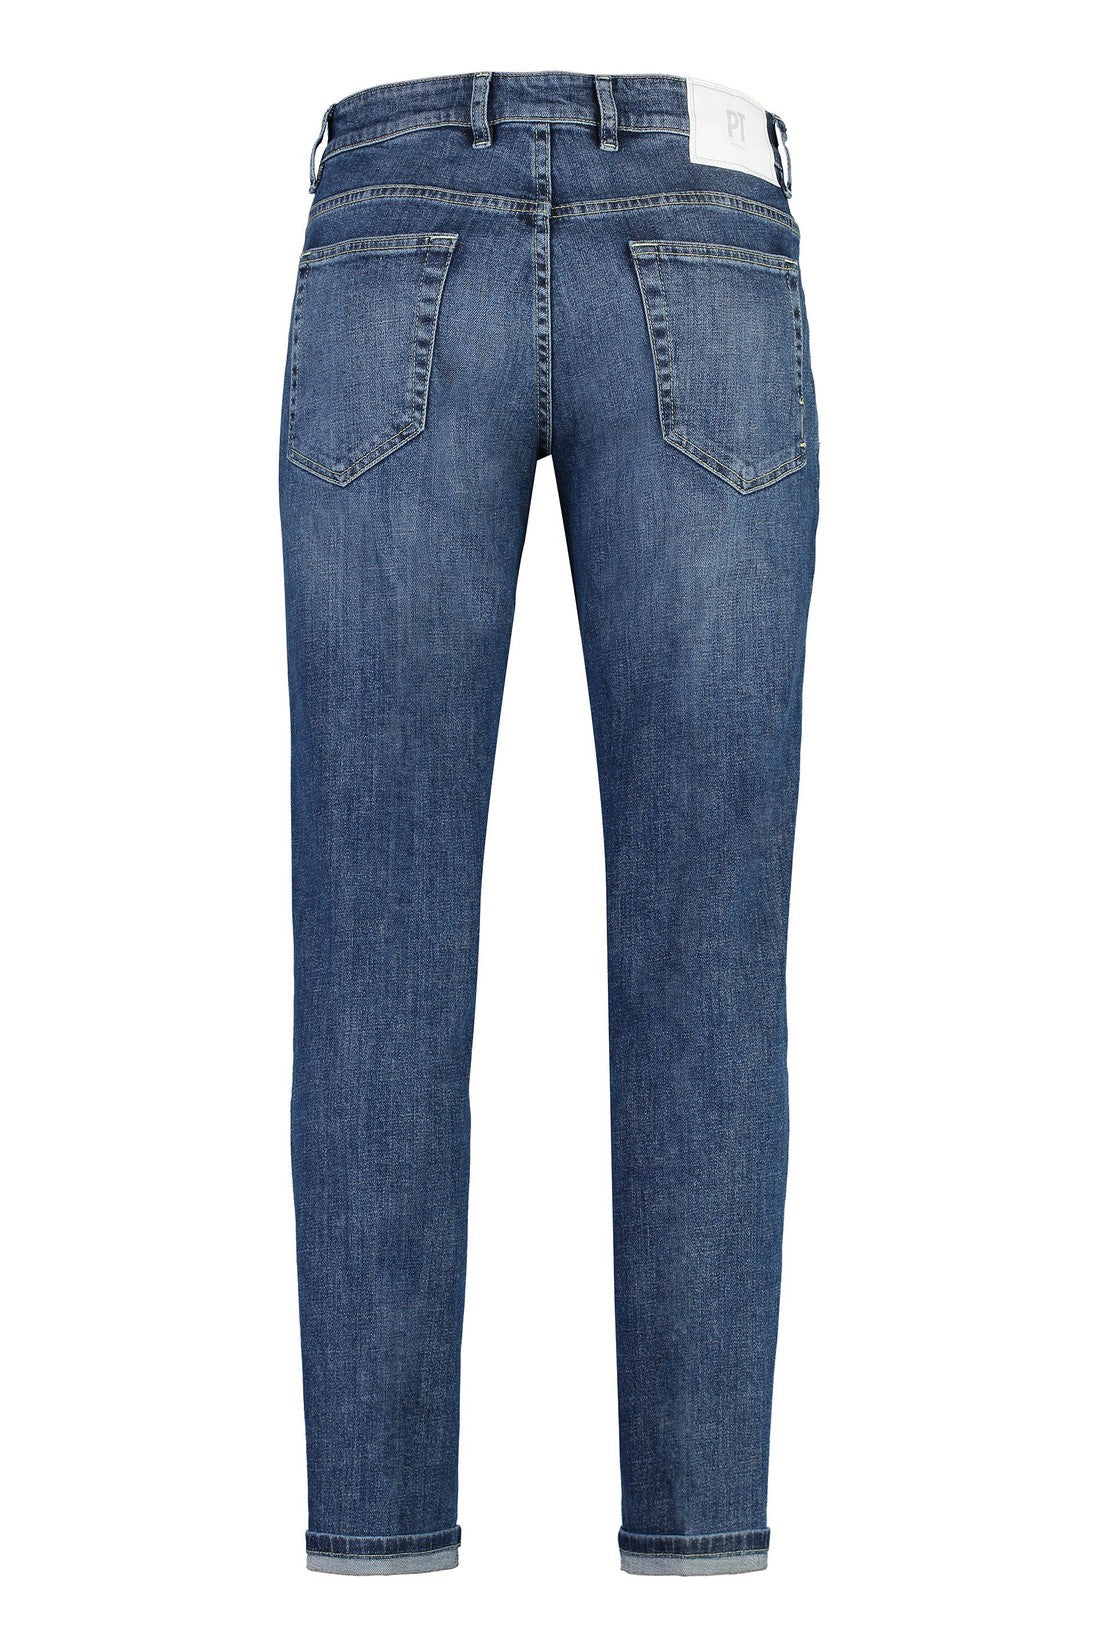 PT01 Pantaloni Torino-OUTLET-SALE-Indie slim fit jeans-ARCHIVIST